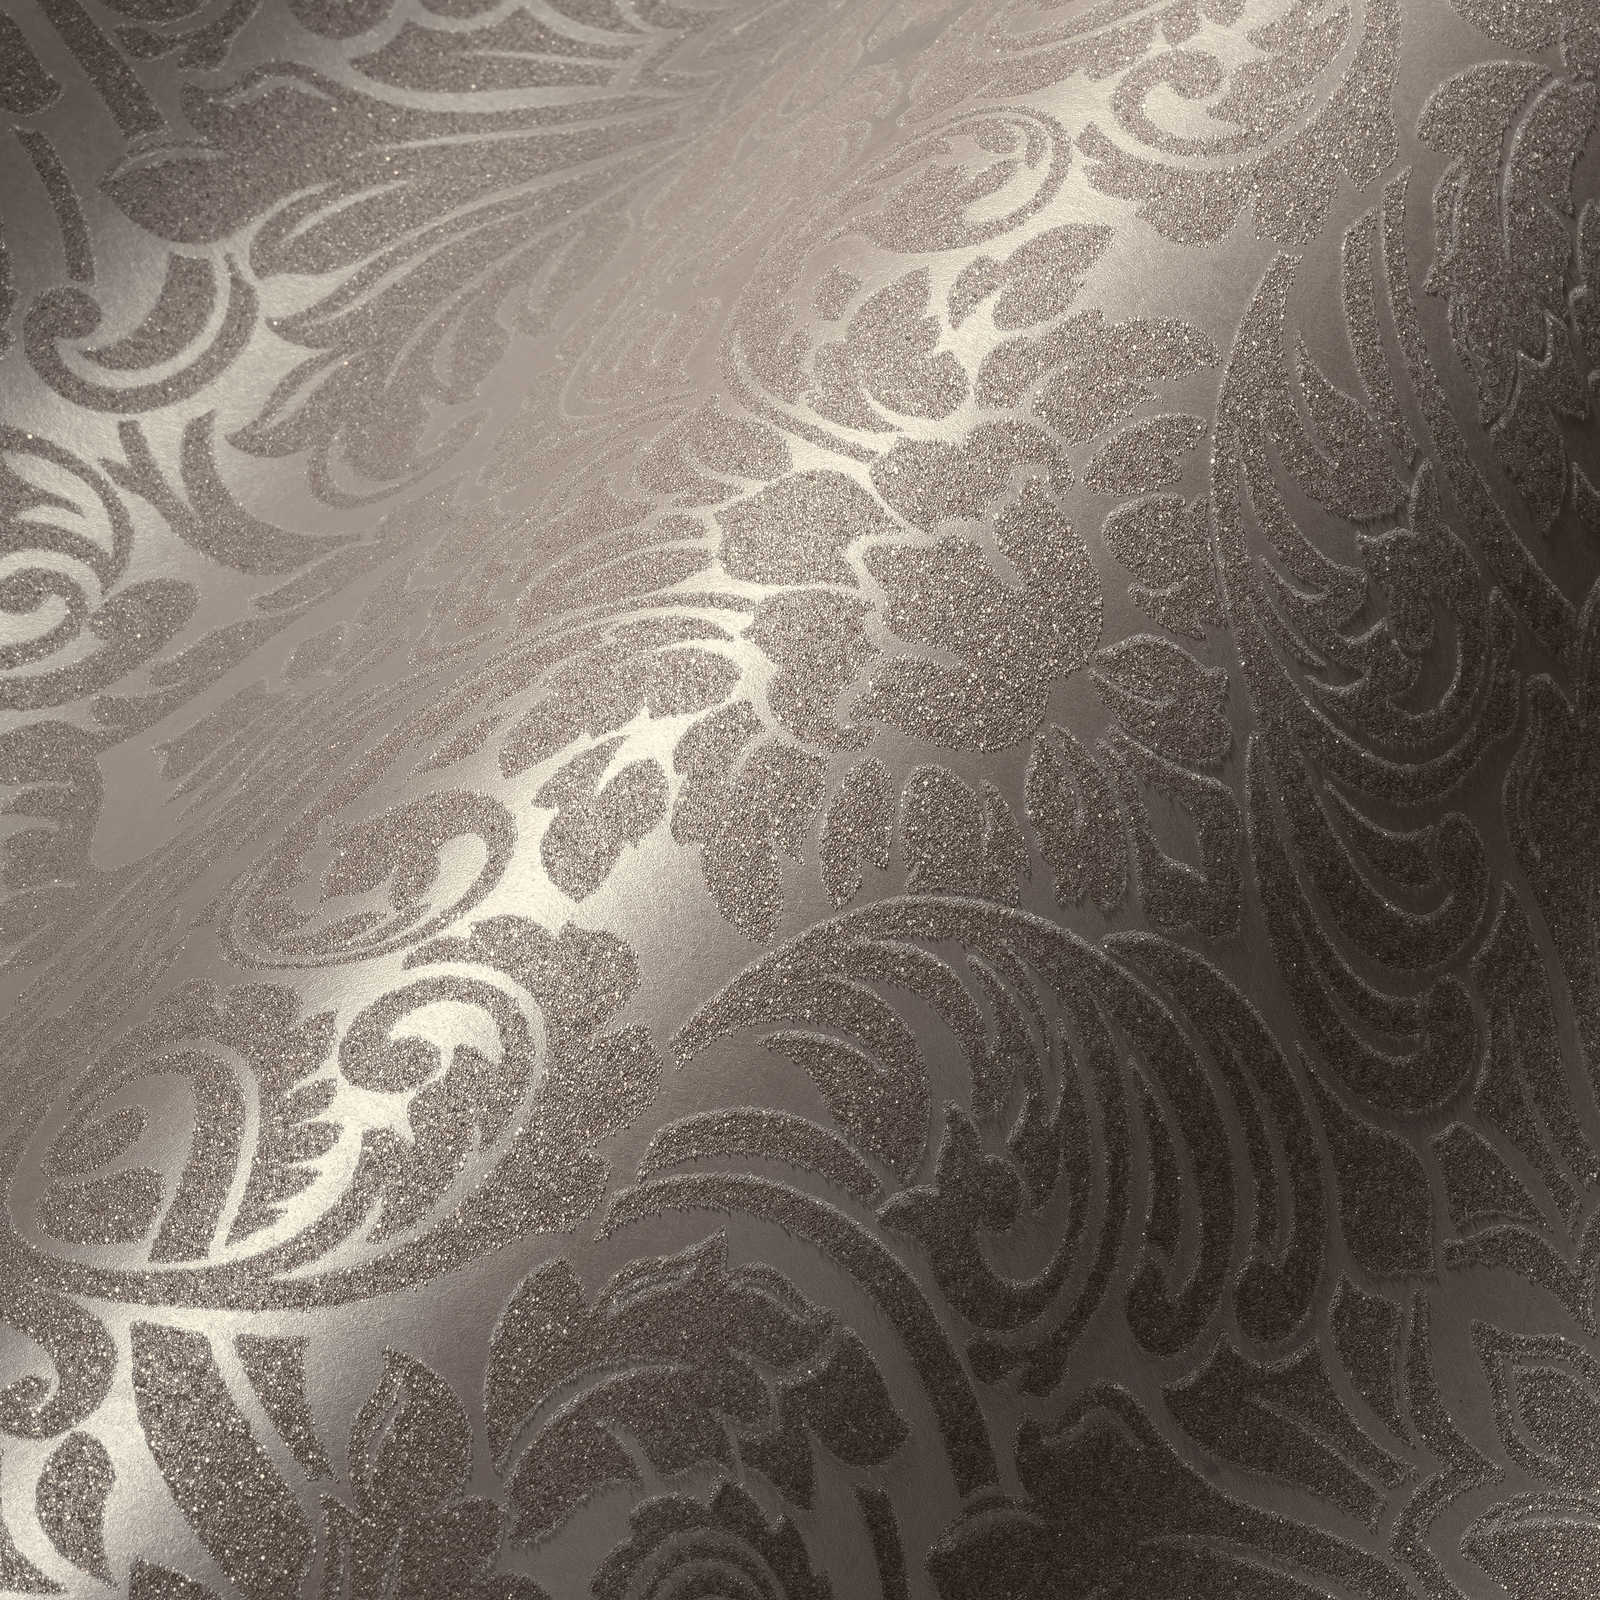             Ornamenttapete mit Metallic-Effekt und floralem Design – Bronze, Braun
        